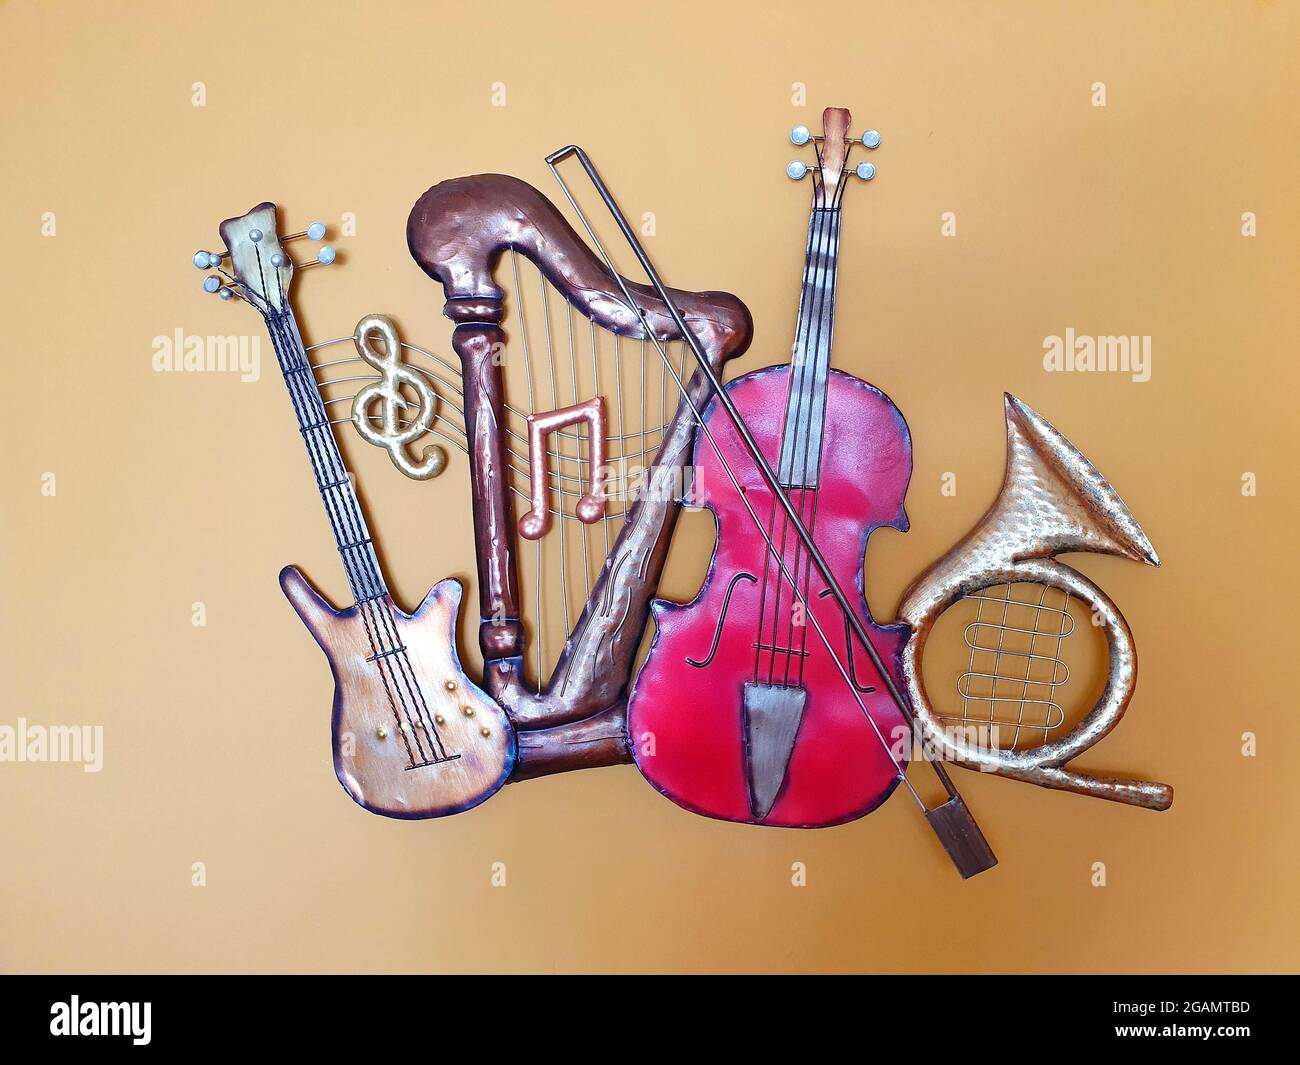 Modèles miniatures d'instruments de musique. Les modèles sont faits de fer et servent de décoration sur le mur. Banque D'Images